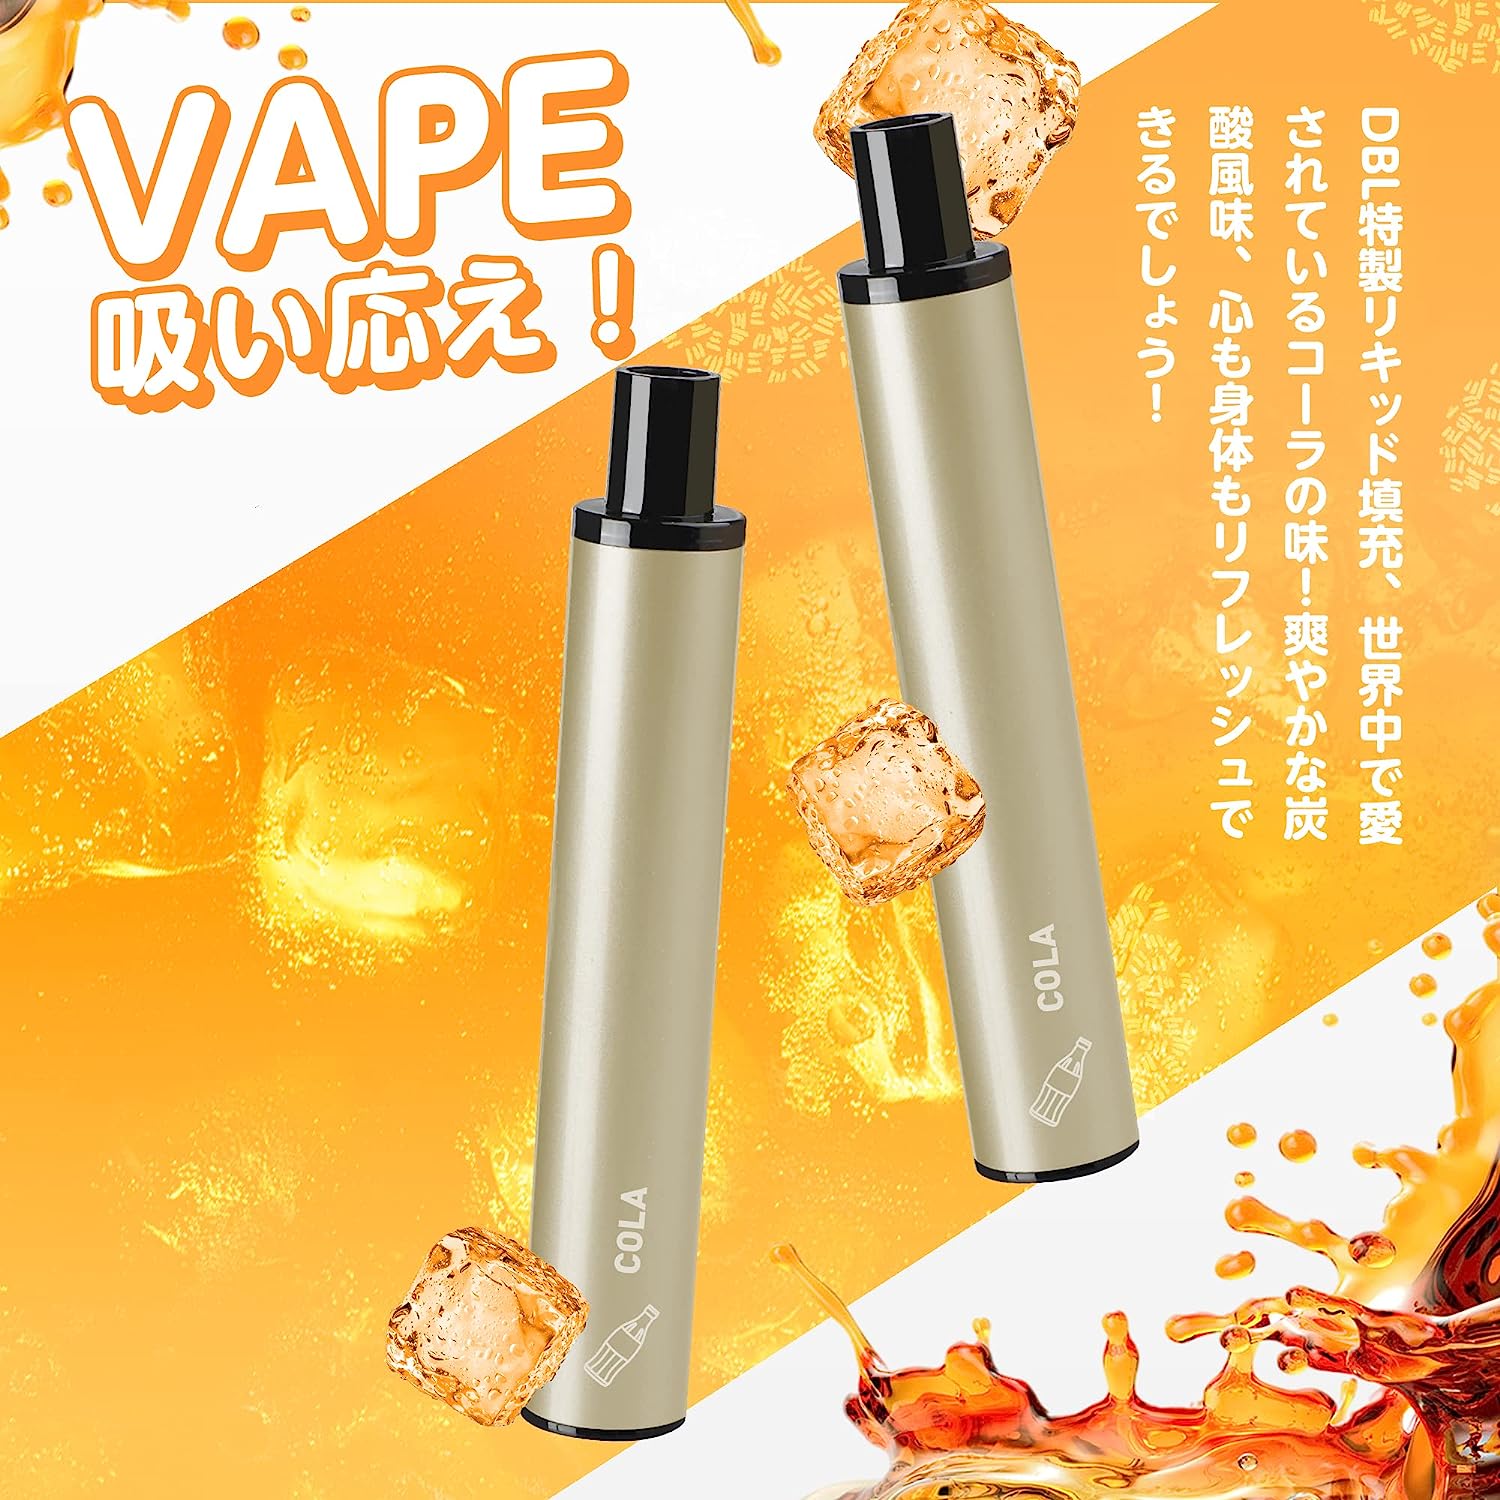 Electronic Cigarette Disposable JT1 Plume Tech Tobacco Capsule Attachable Vape Explosive Smoke Nicotine Zero Auto Switch (Cola)